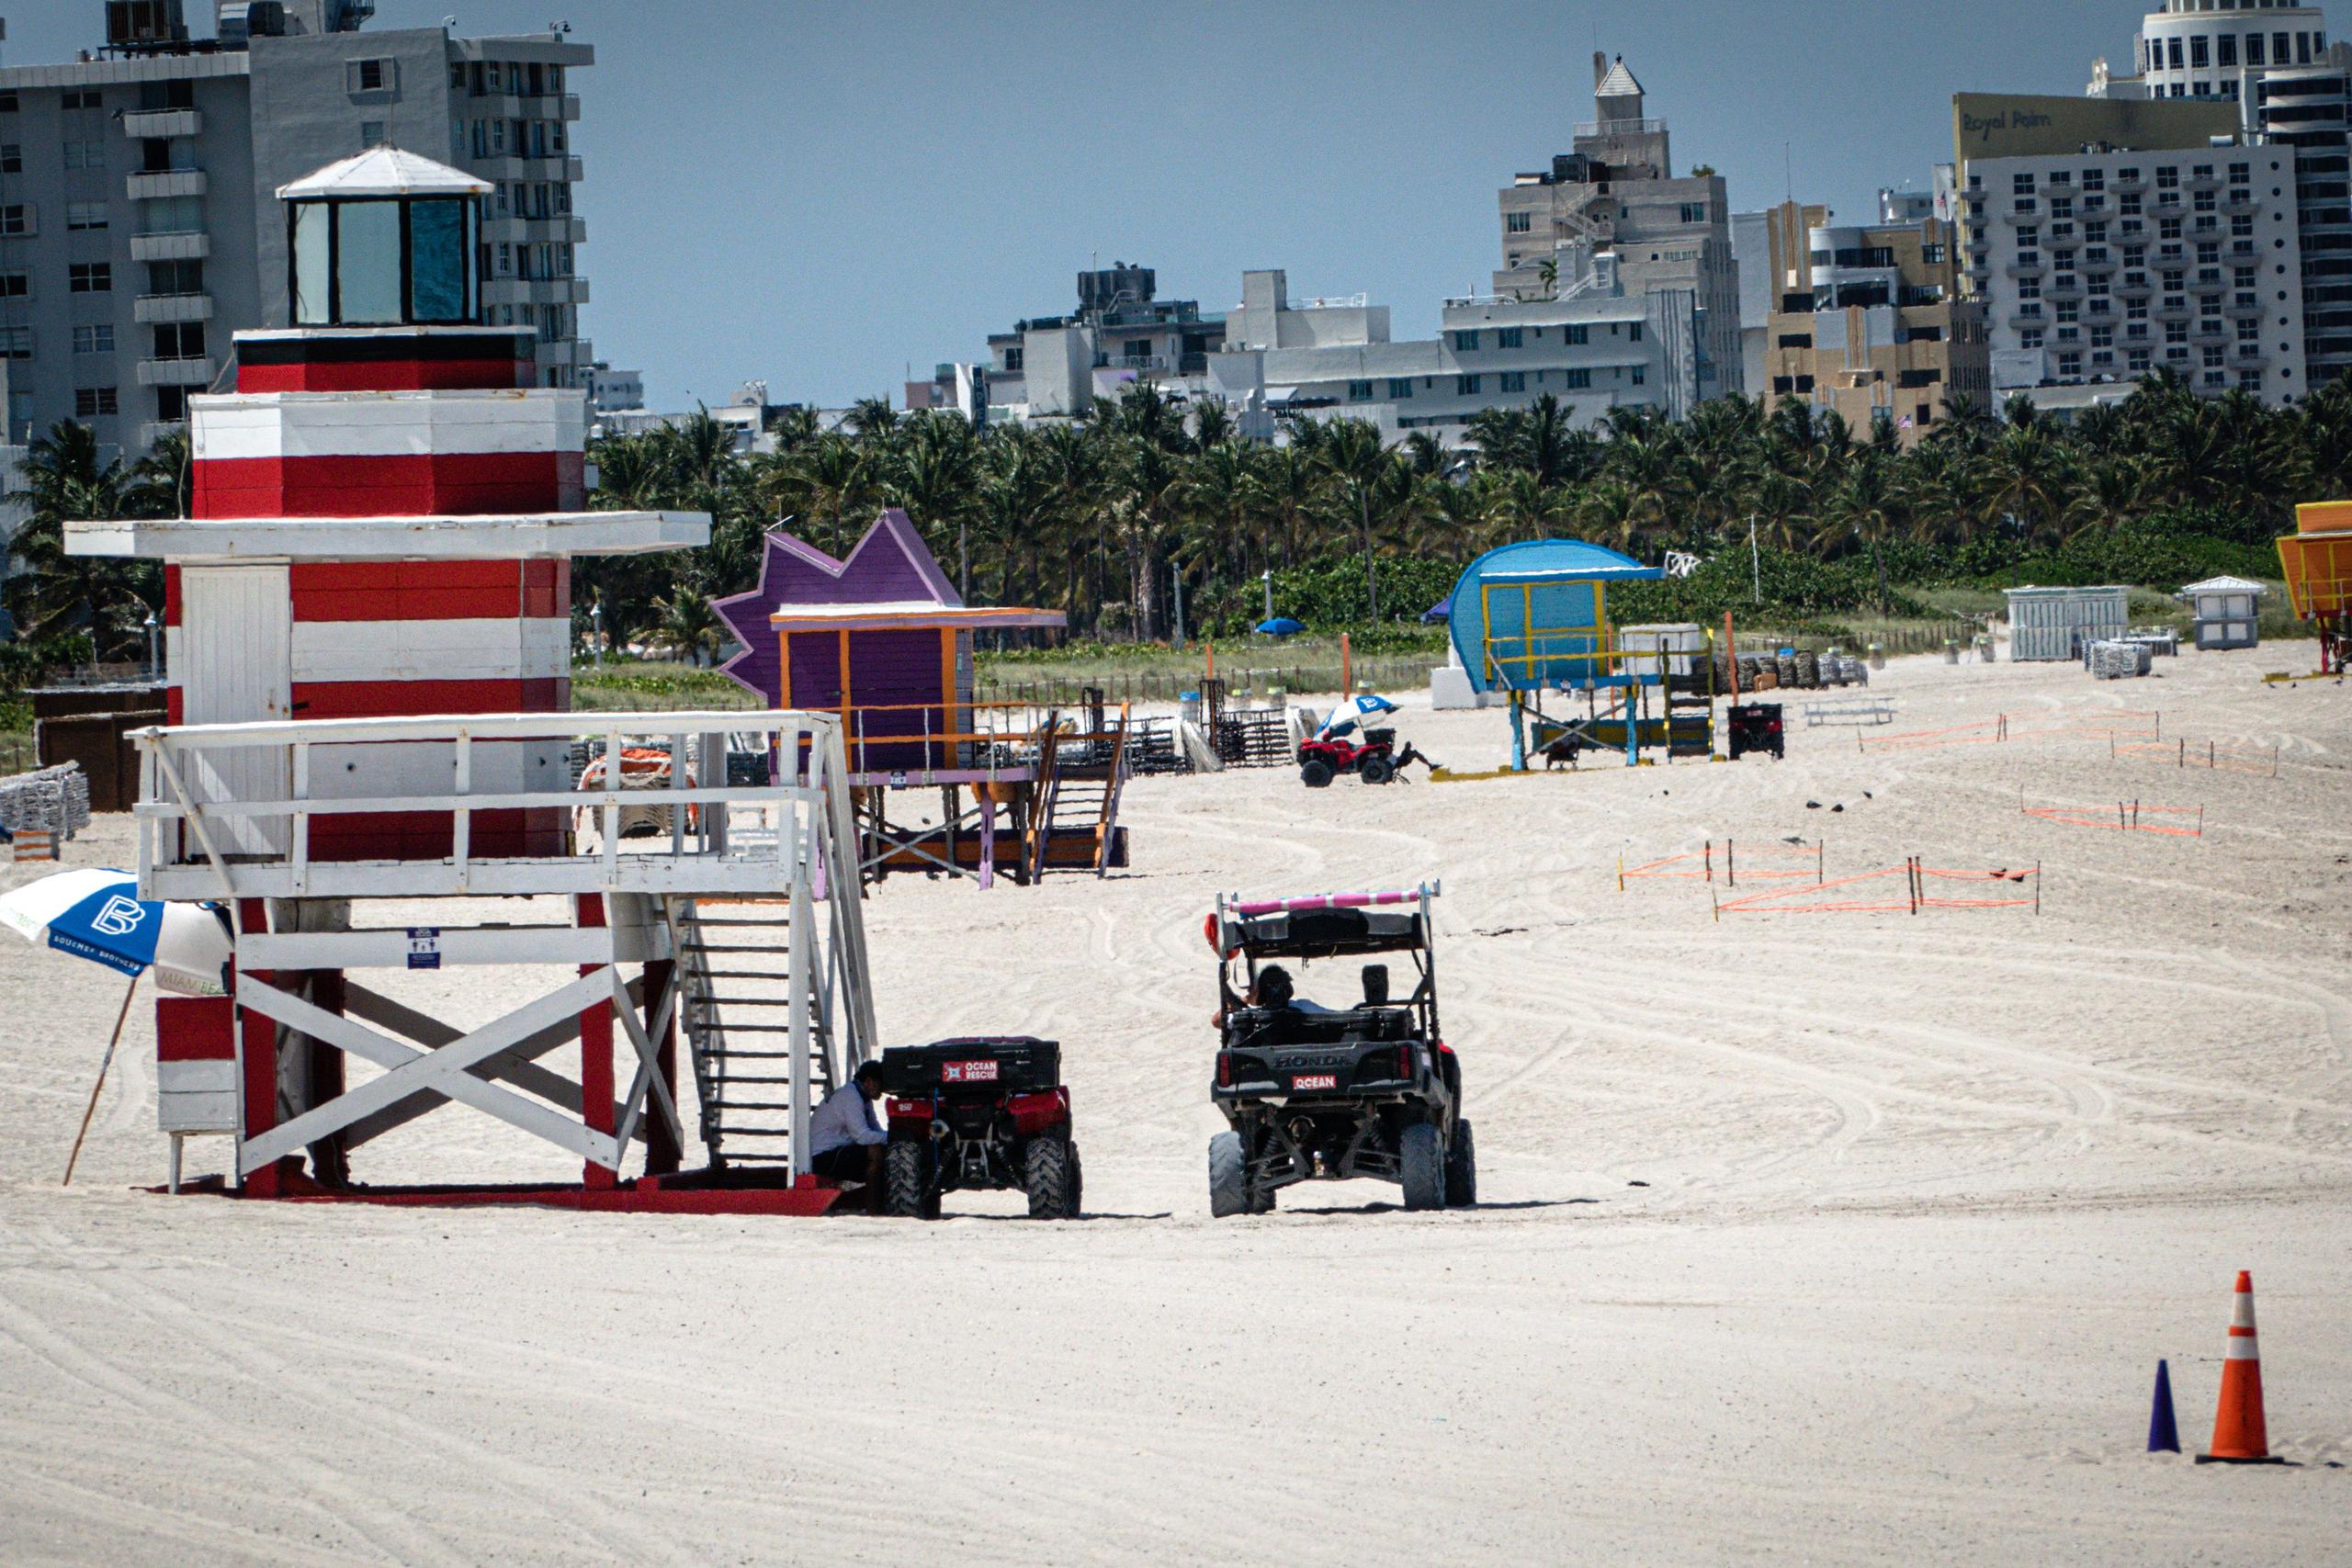 Debido a los casos nuevos diarios de la COVID-19, el alcalde del condado de Miami Dade, Carlos Giménez, ha cerrado las playas durante el fin de semana largo del 4 de Julio, Día de la Independencia de EE.UU.